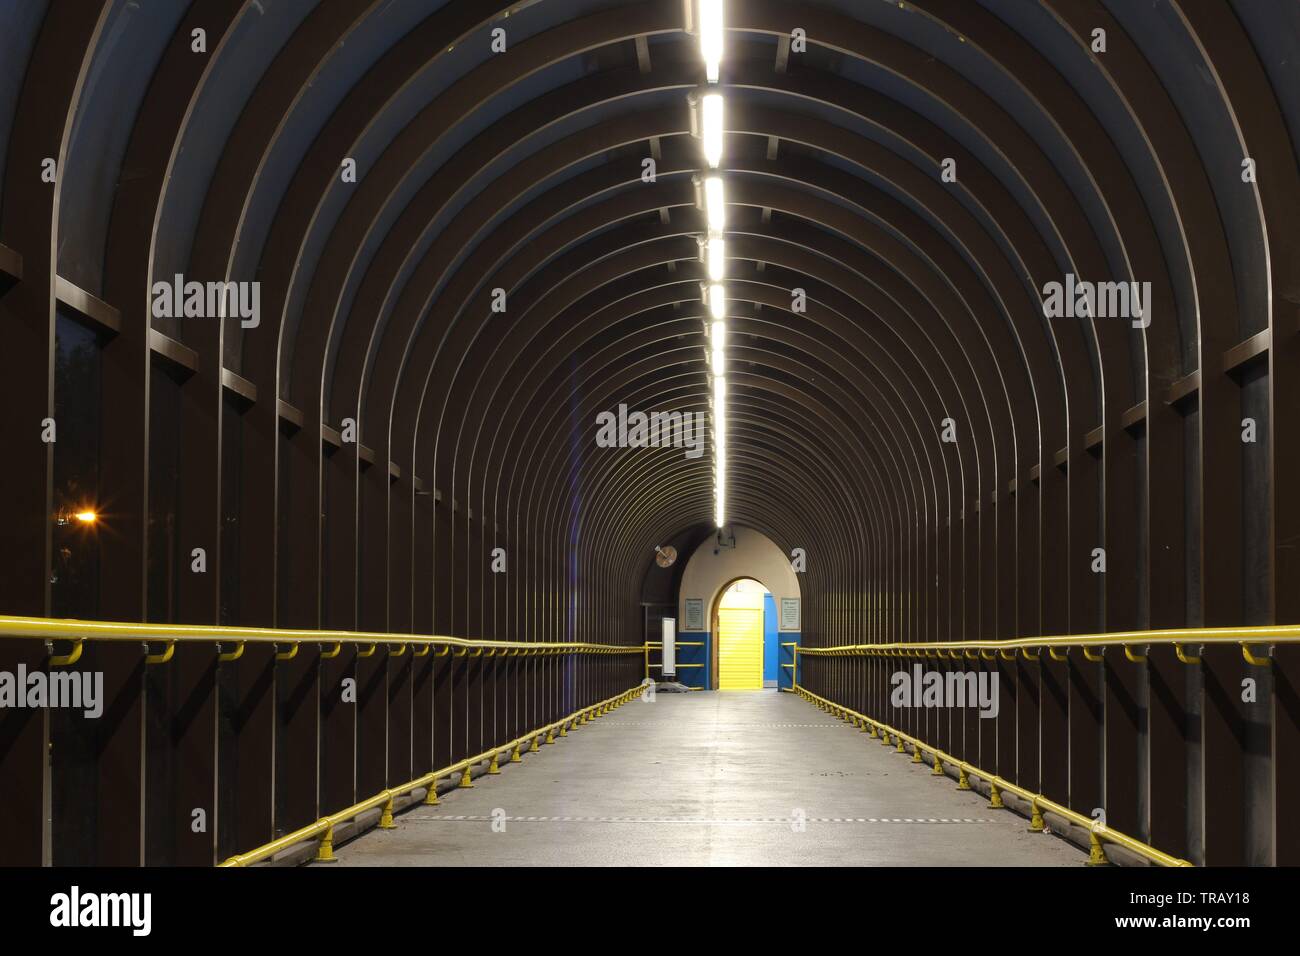 Lange Tunnel zwischen Gebäude, London, England Stockfotografie - Alamy